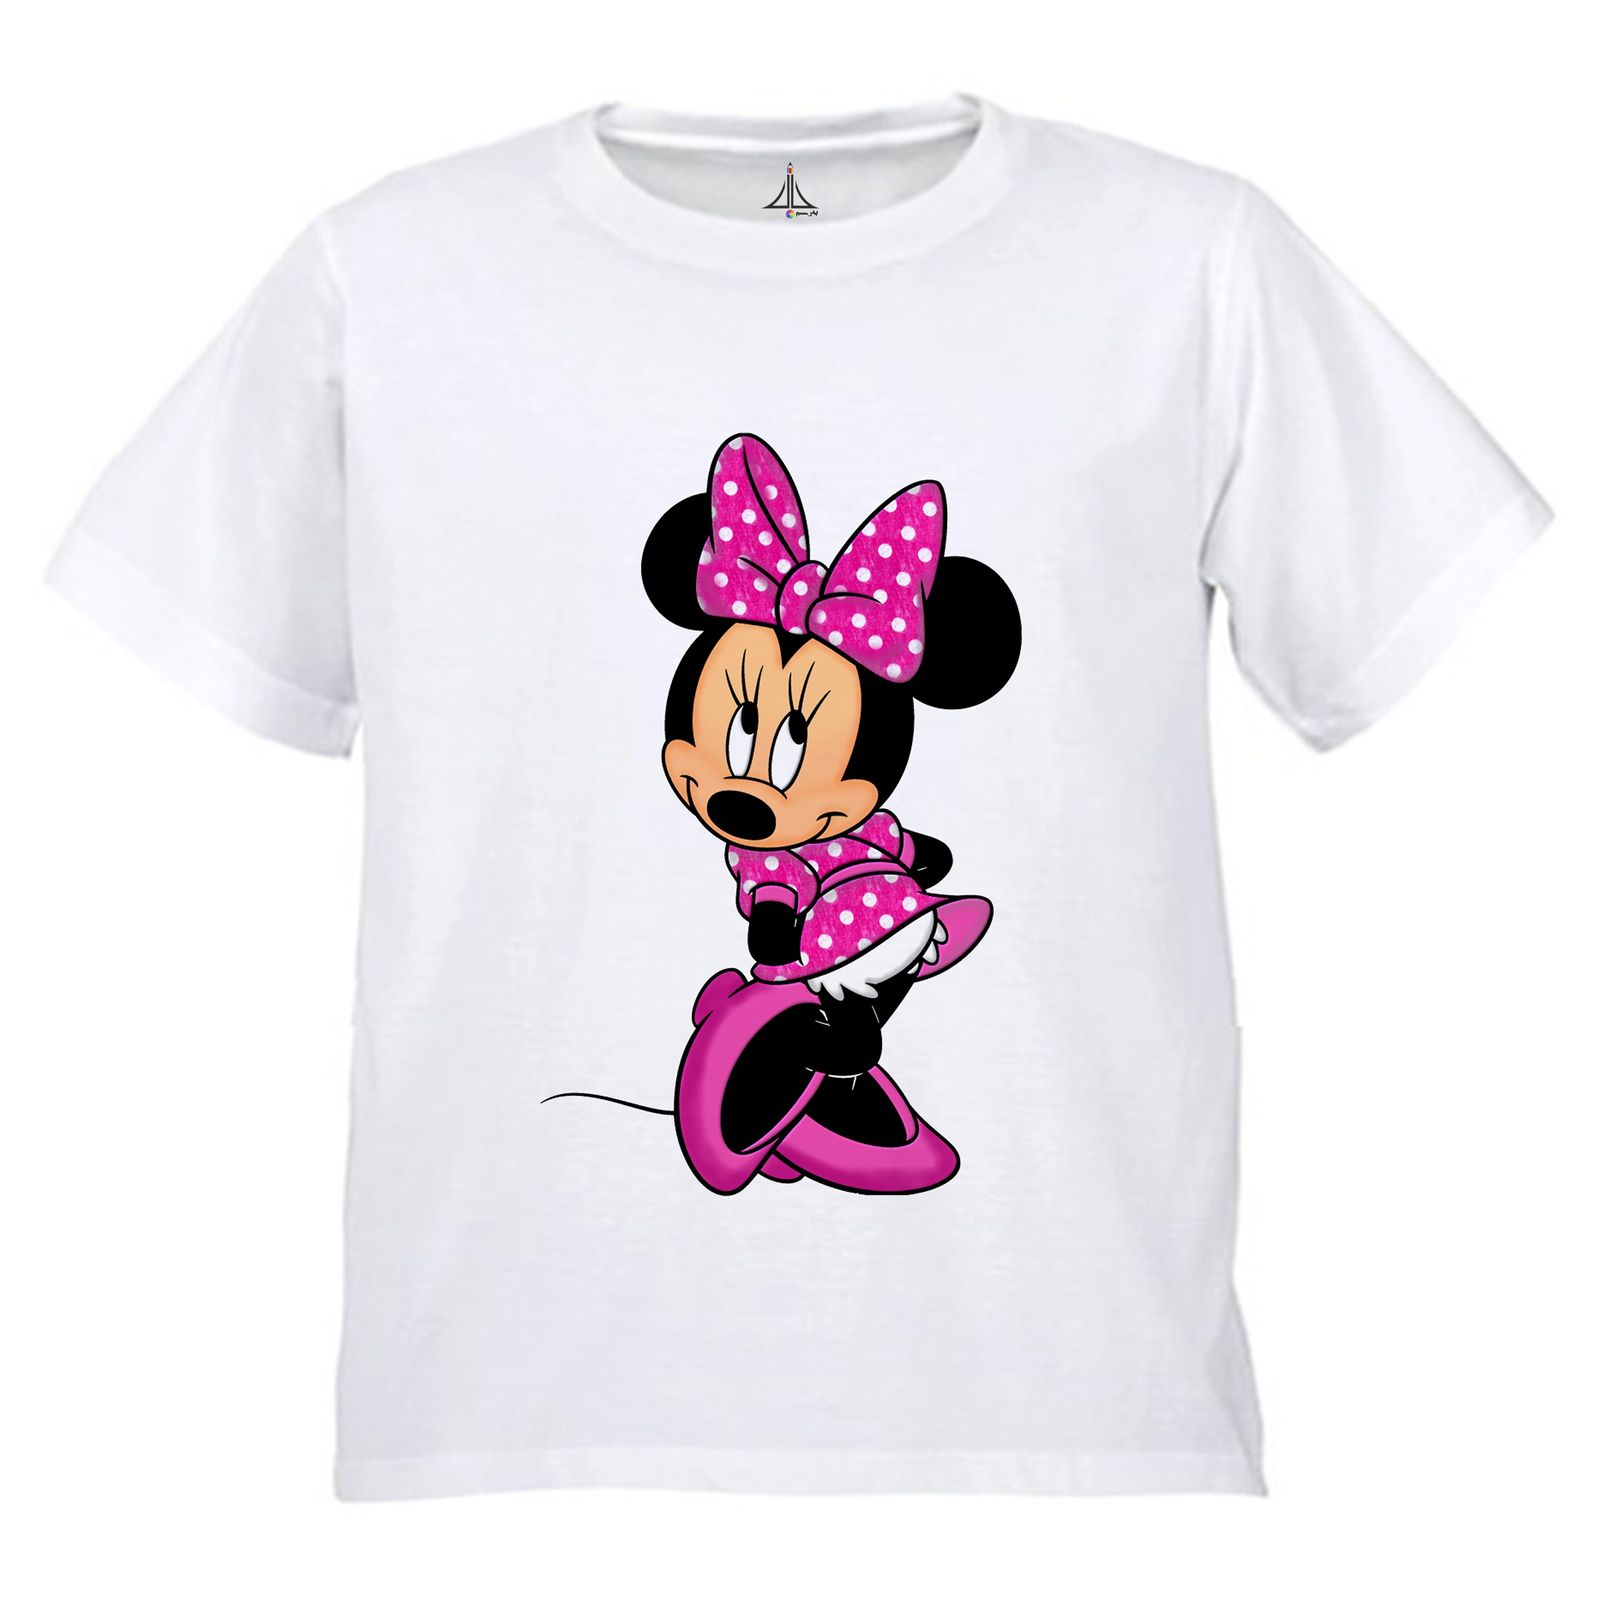 تی شرت دخترانه به رسم طرح میکی کد 9903 -  - 1